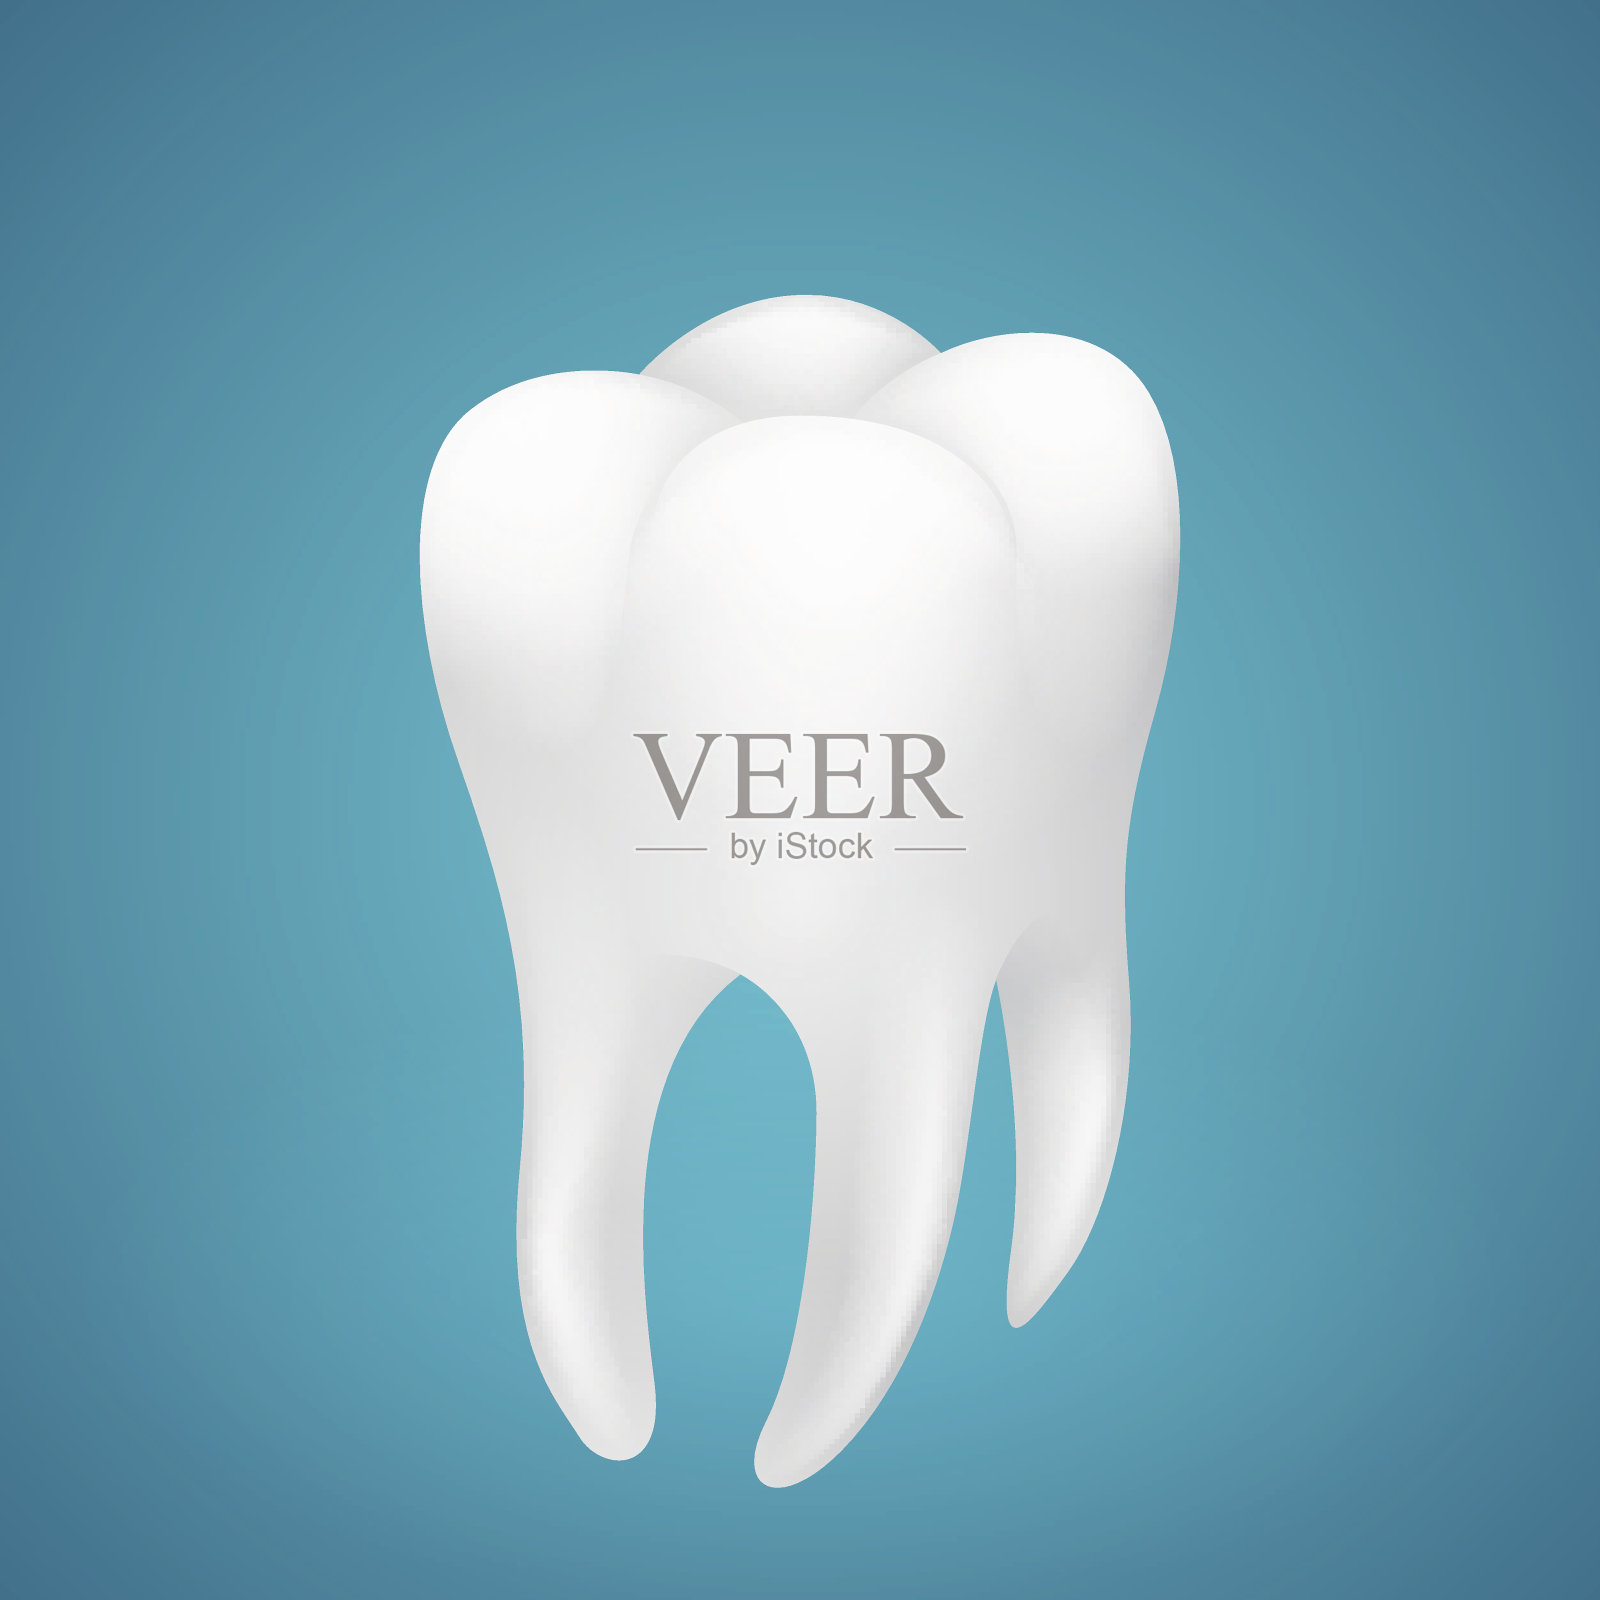 蓝色背景上的健康人类牙齿插画图片素材